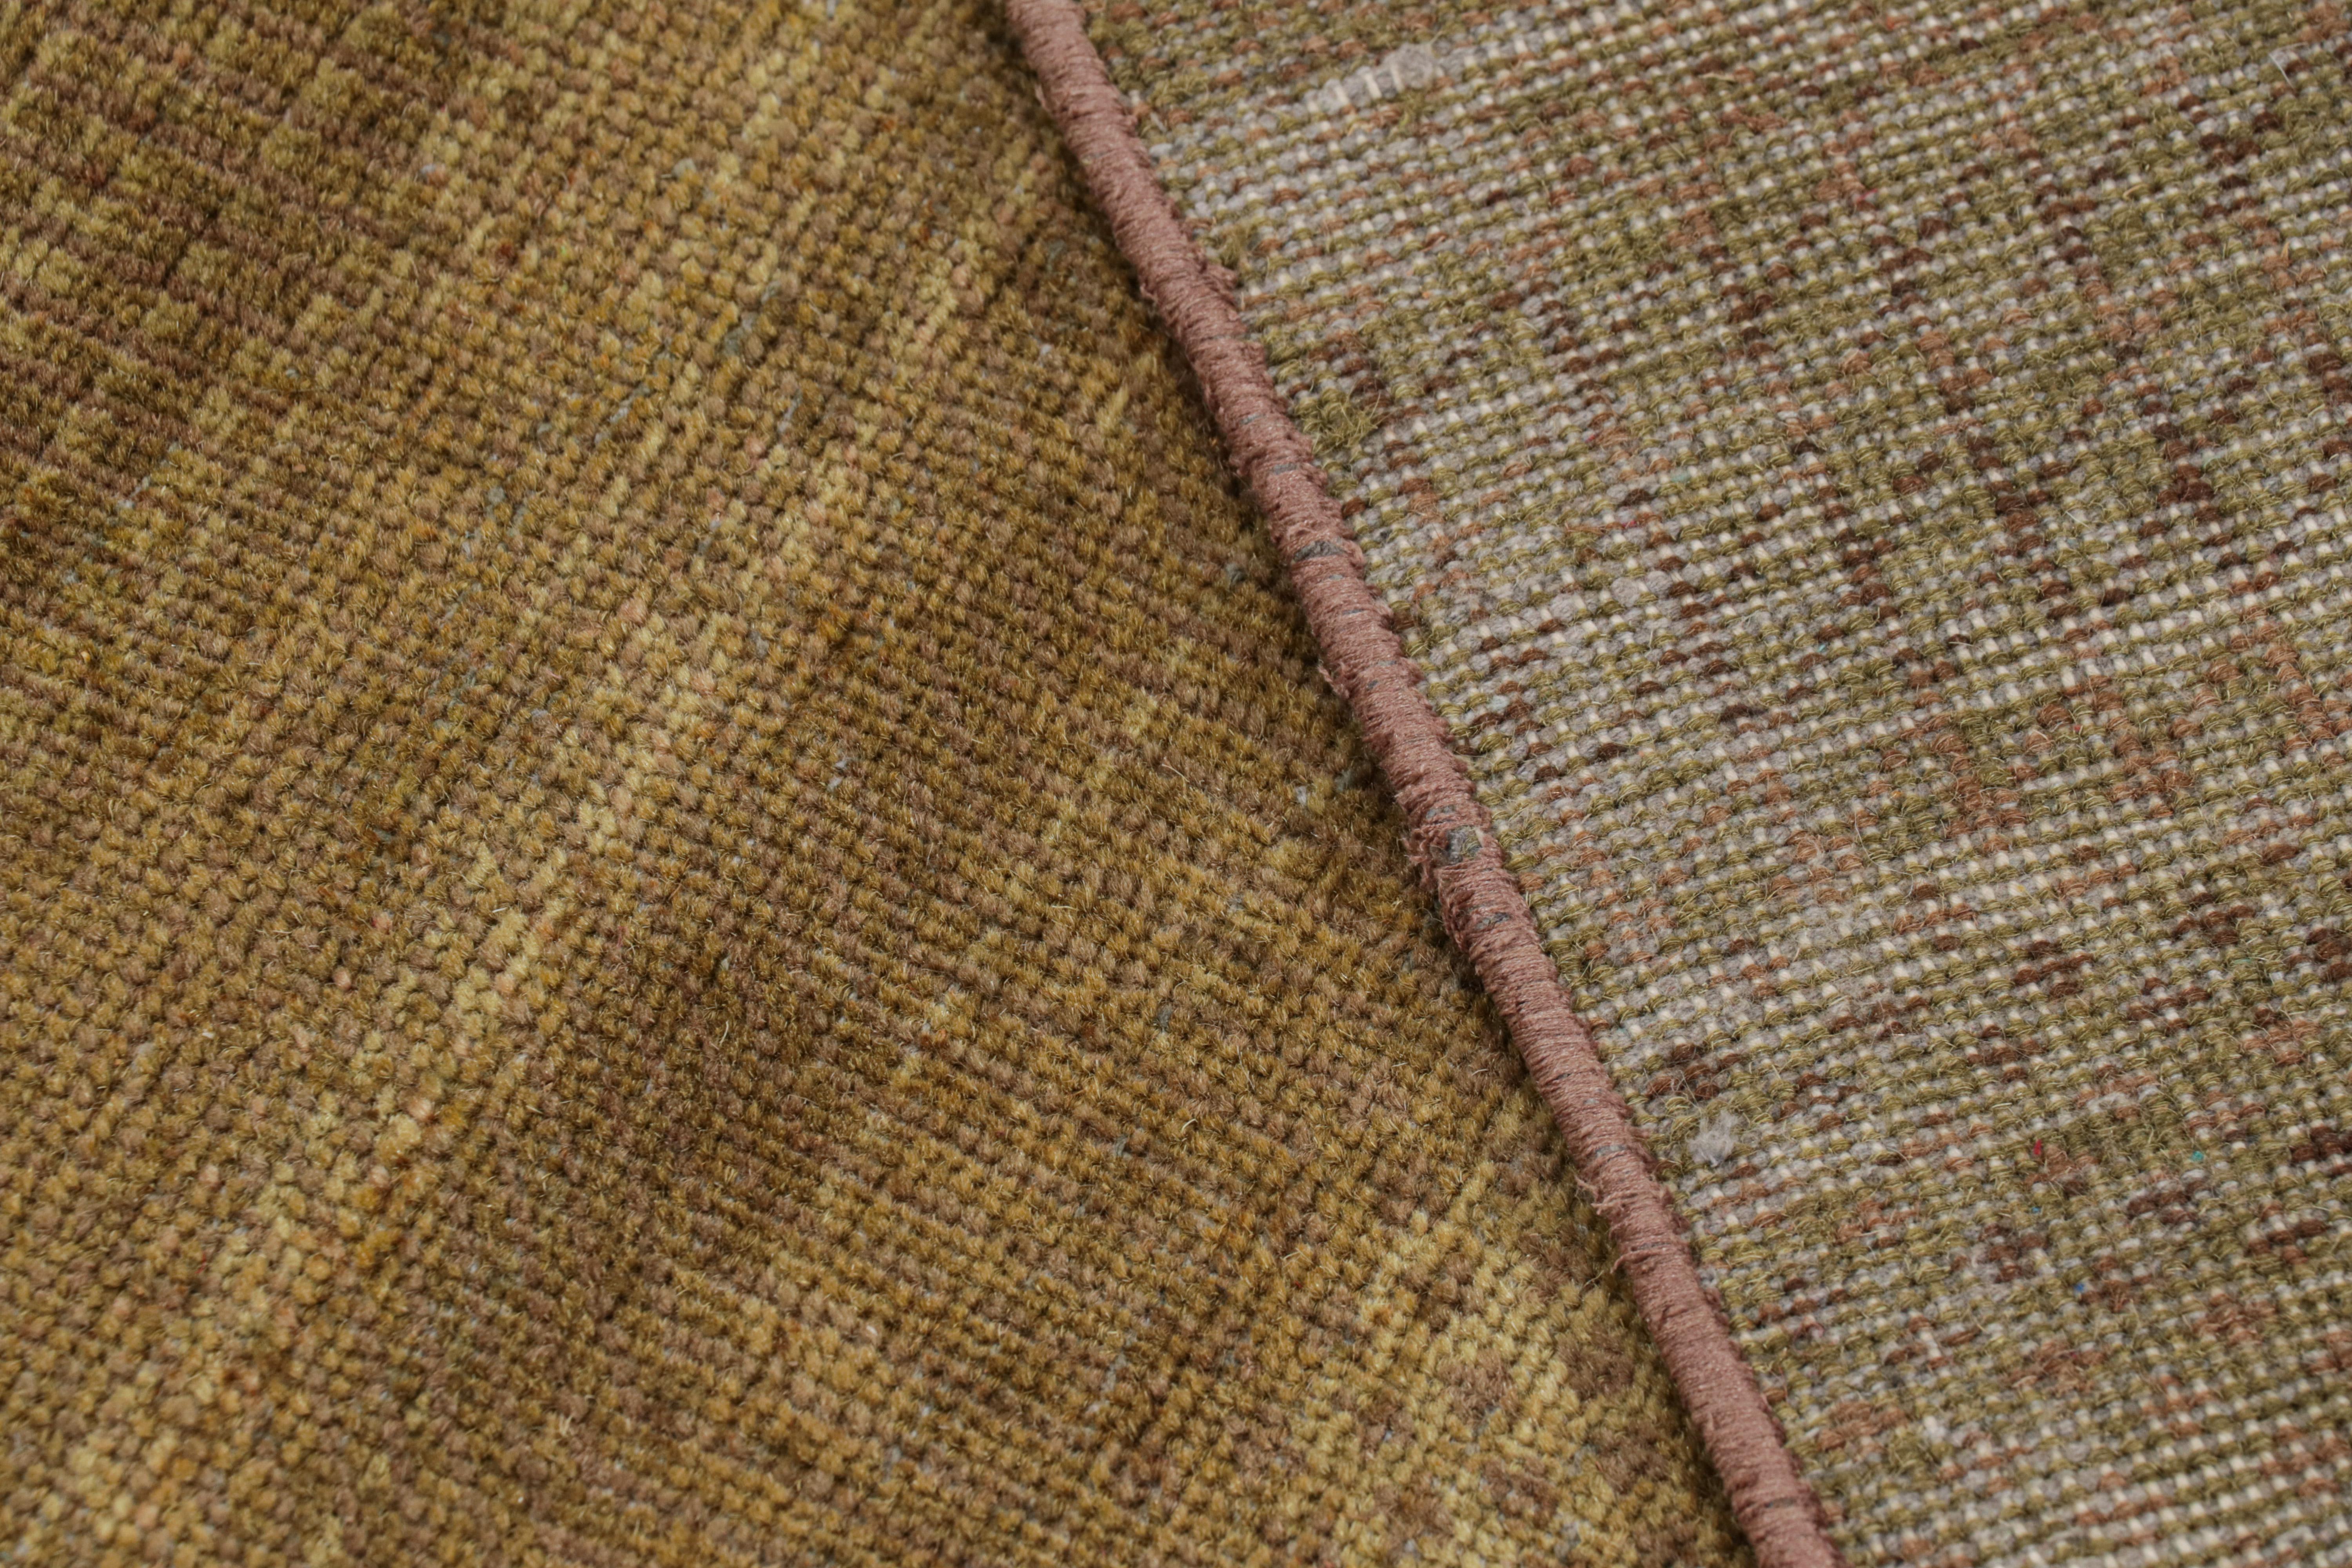 Laine Rug & Kilim's Modern Textural Rug in Green, Brown and Gold Stripes and Striae (Tapis à rayures et à bandes vertes, brunes et dorées) en vente